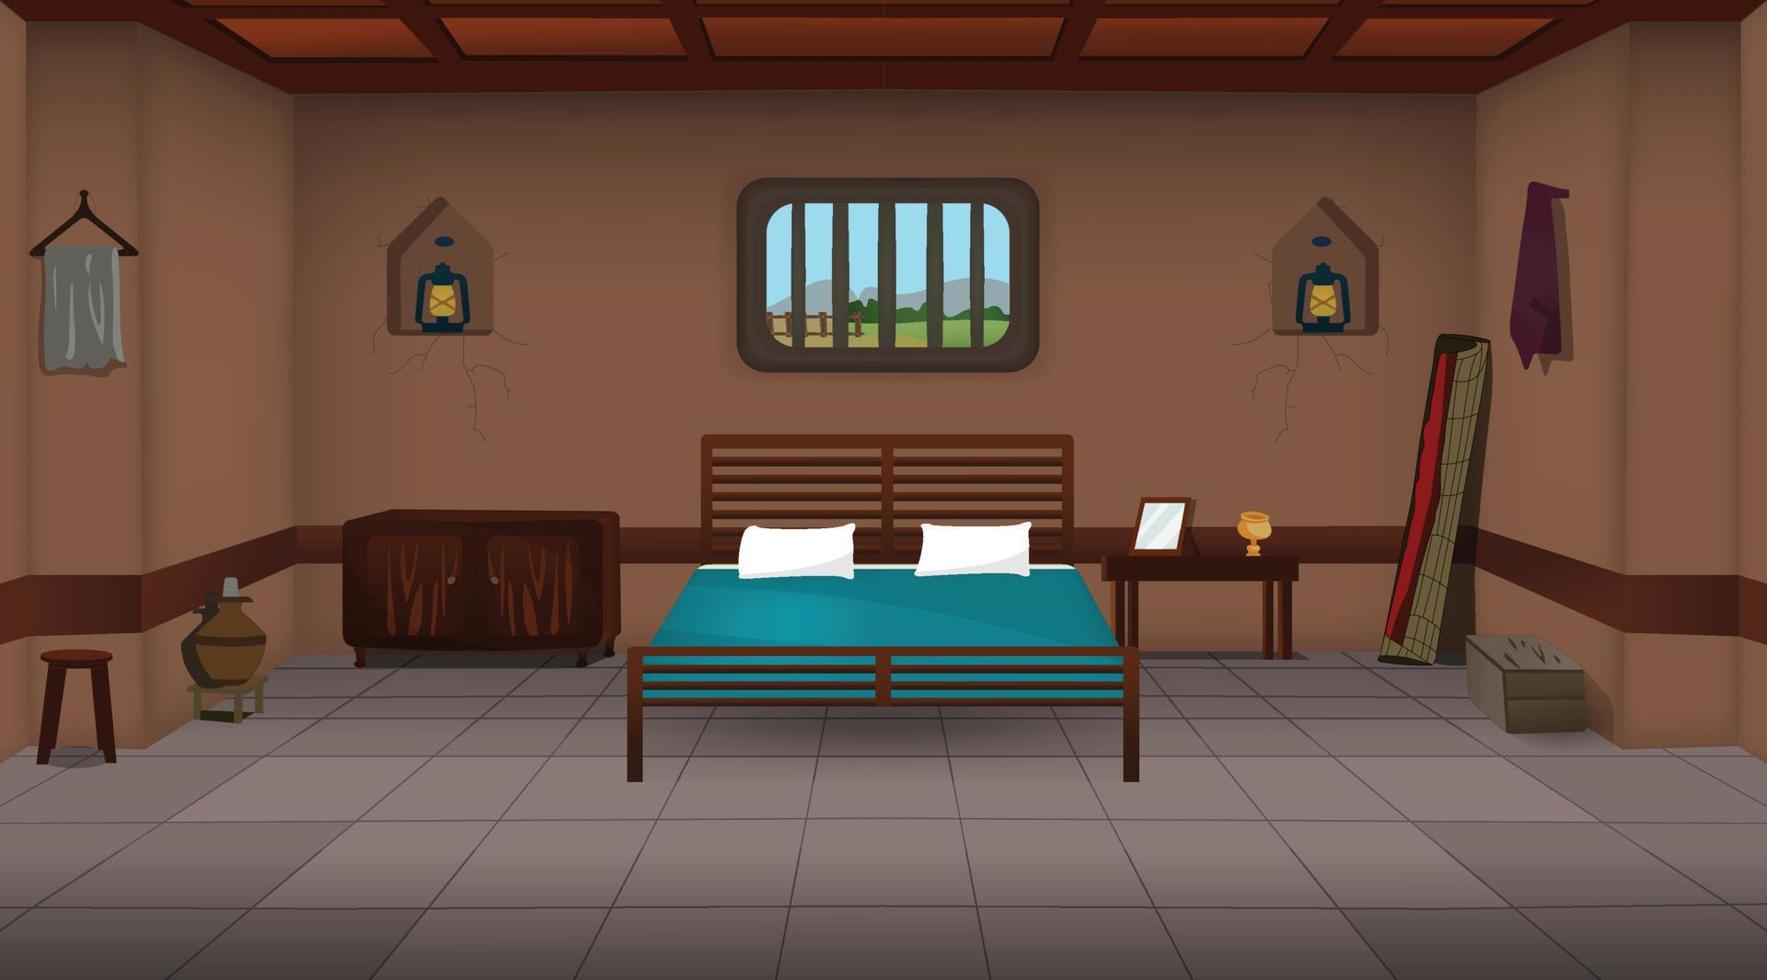 habitación de la aldea dentro del vector de fondo de dibujos animados, ilustraciones de vectores interiores de la habitación de la casa pobre.